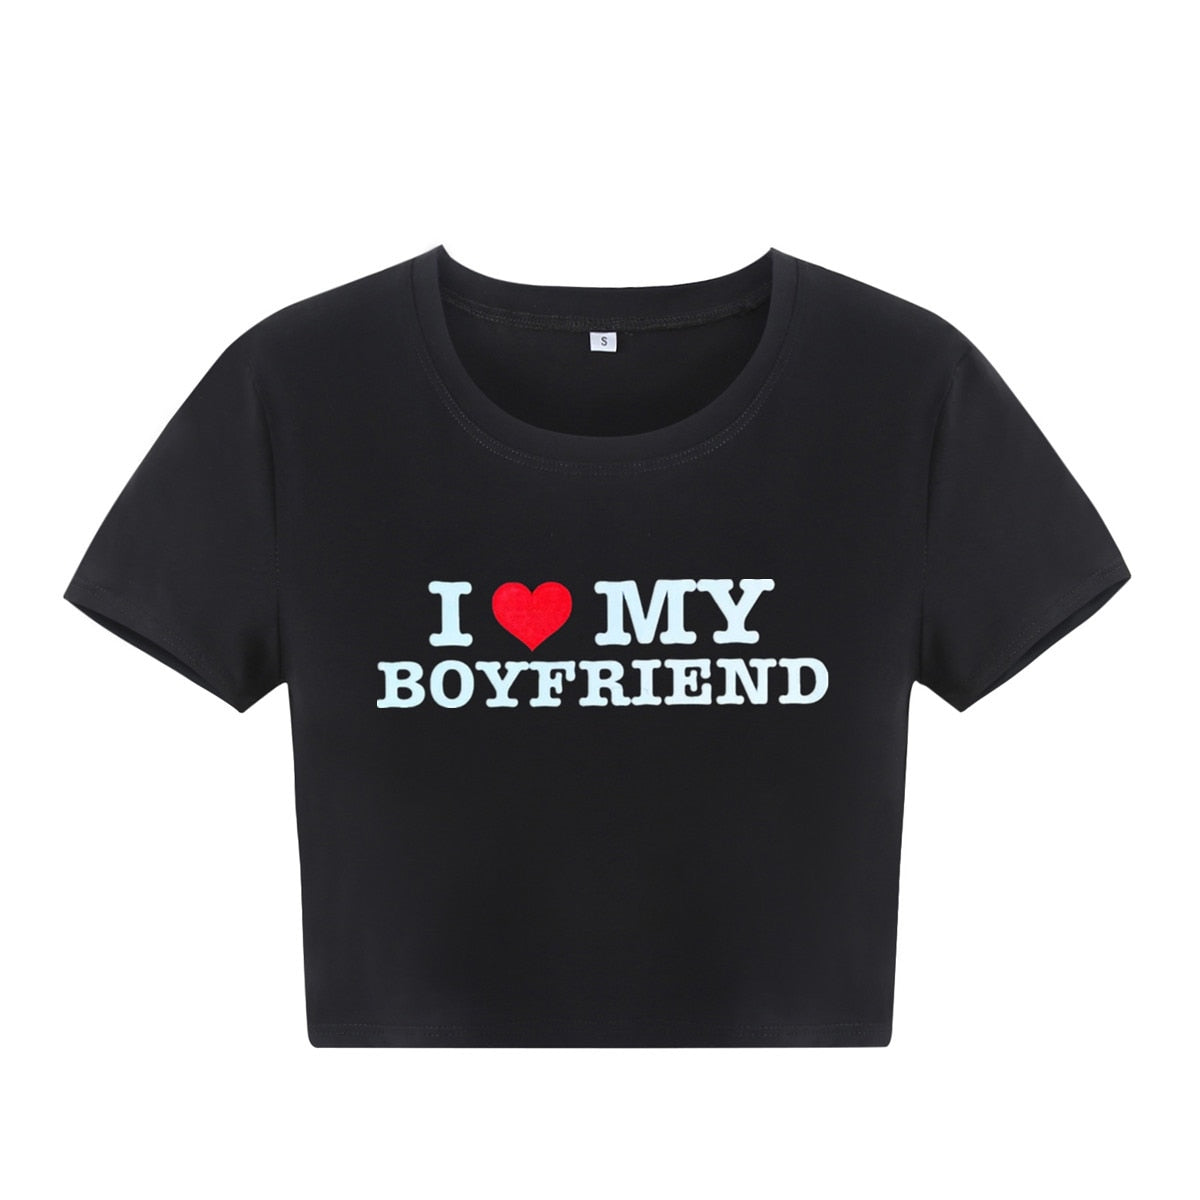 " i love my boyfriend " crop top